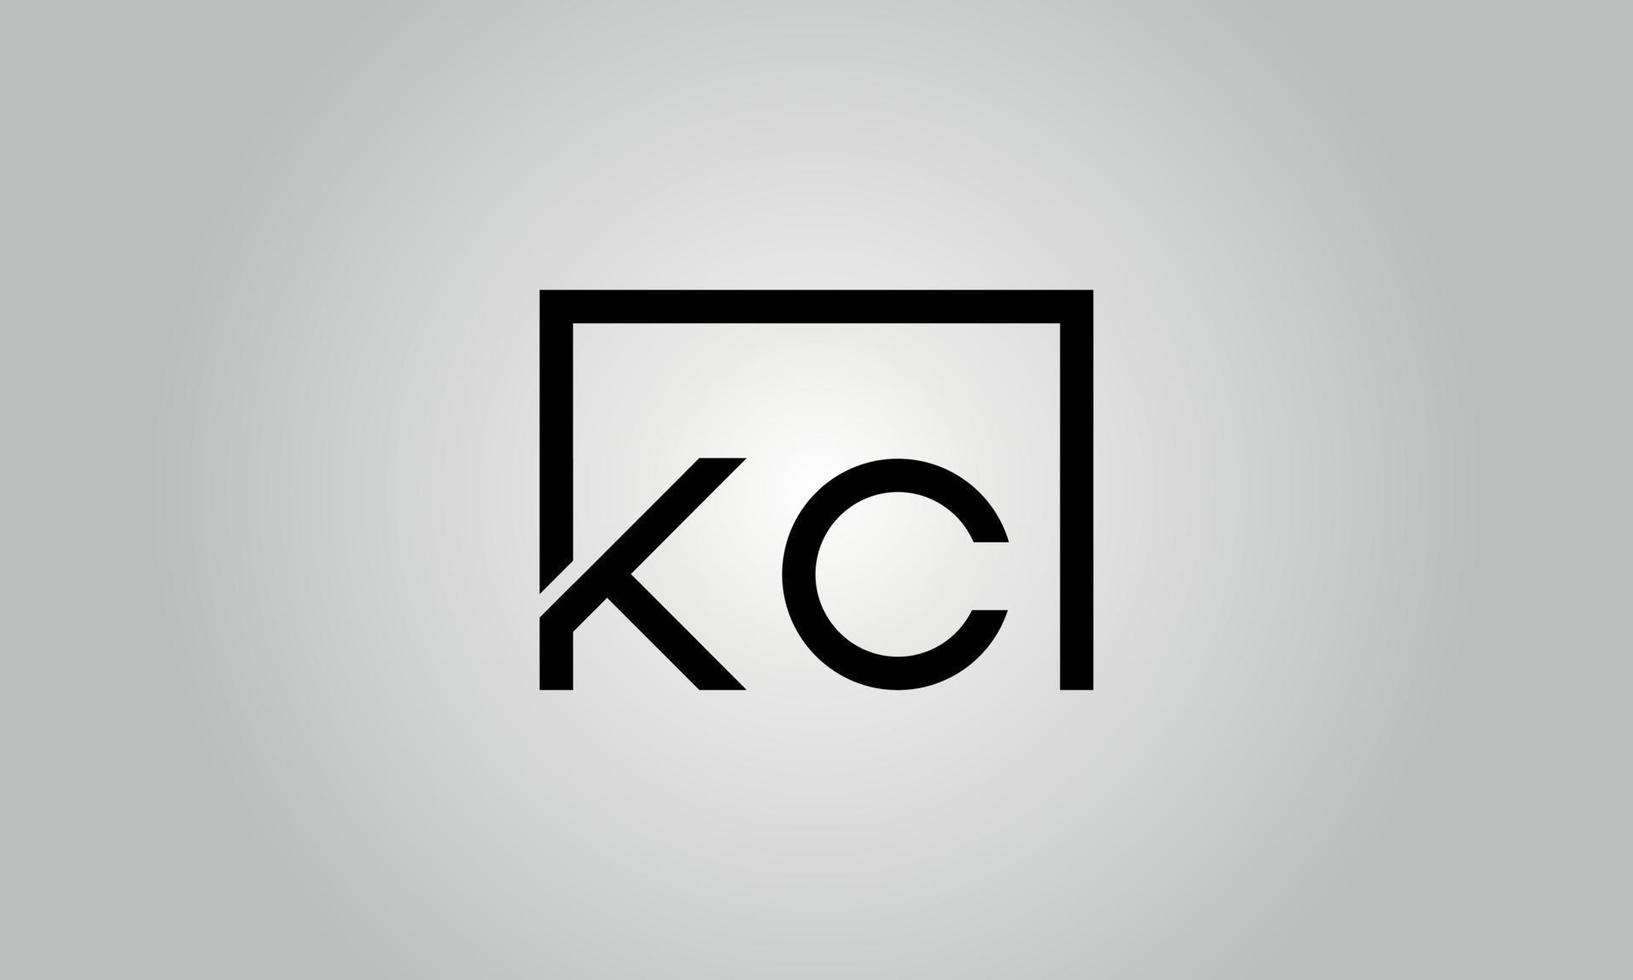 brief kc logo ontwerp. kc logo met plein vorm in zwart kleuren vector vrij vector sjabloon.